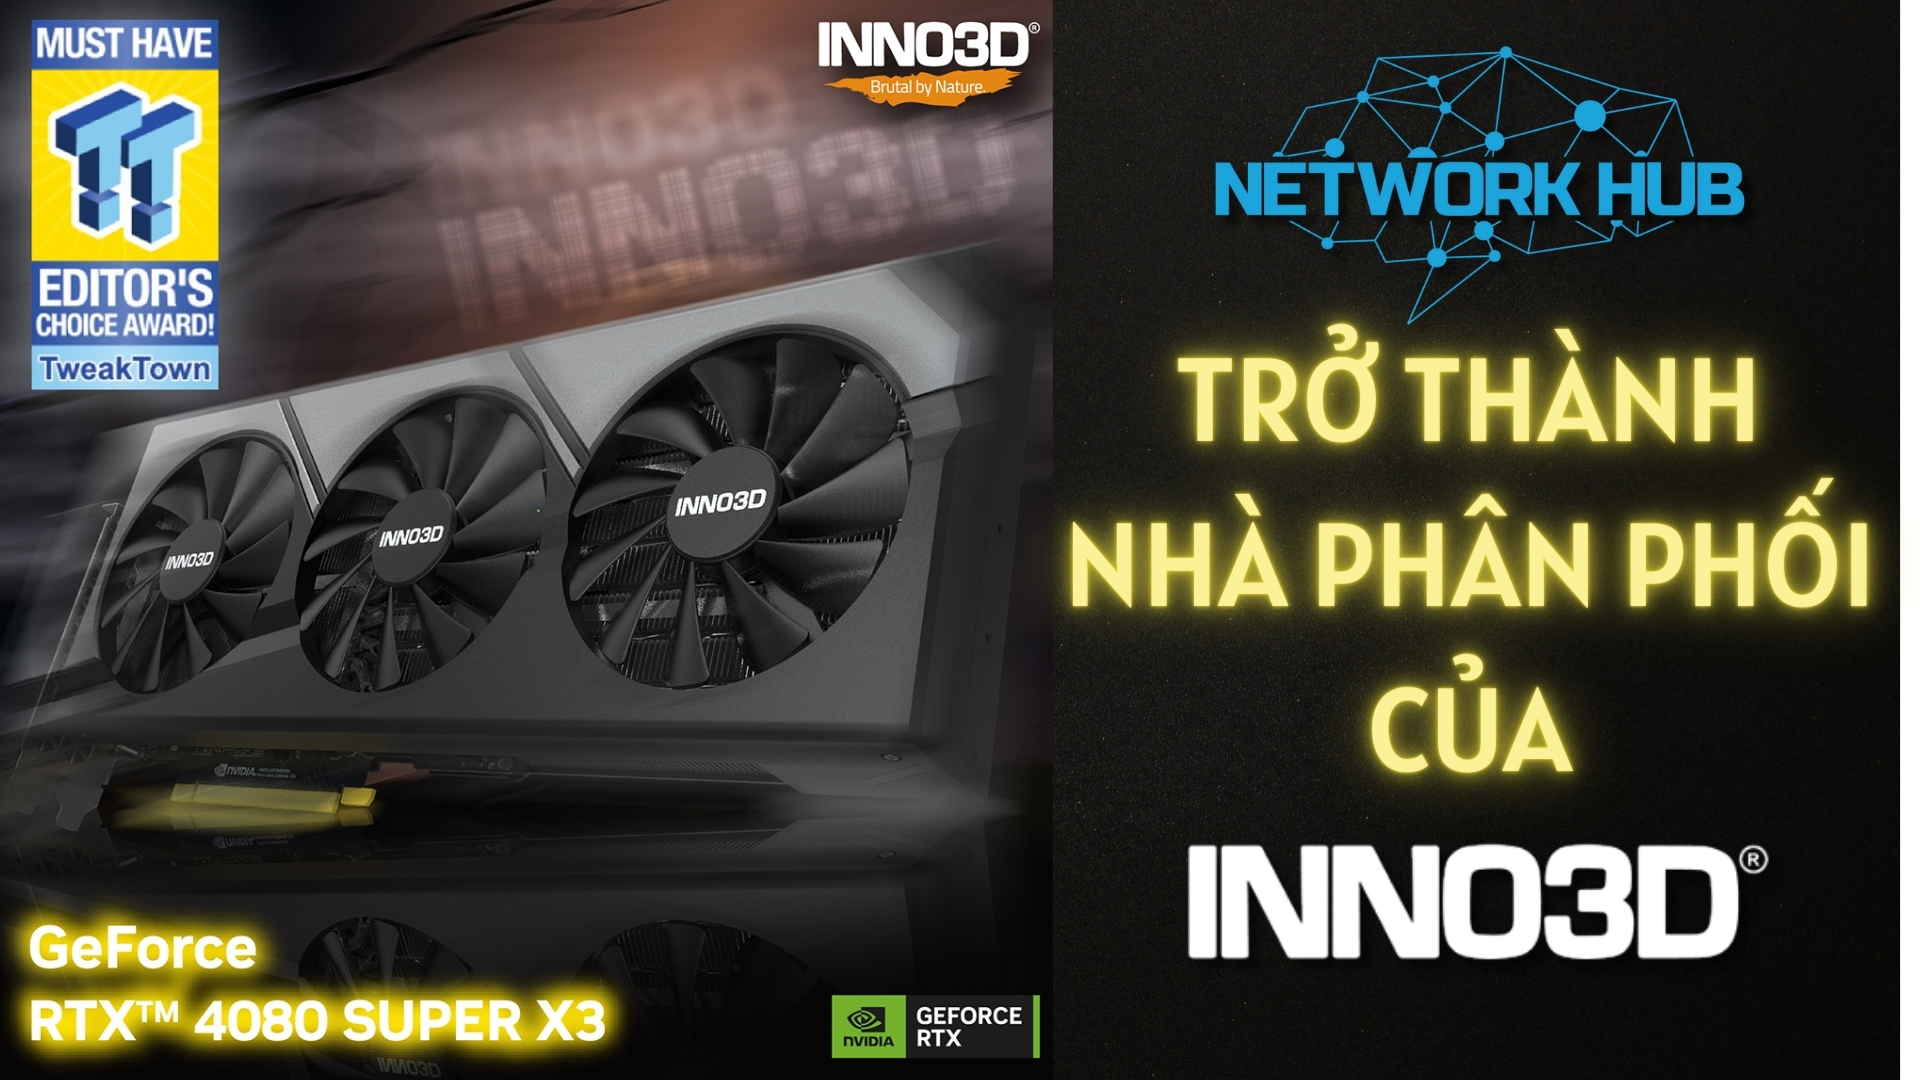 inno3d-va-network-hub-hop-tac-nha-phan-phoi-cua-inno3d-thumb